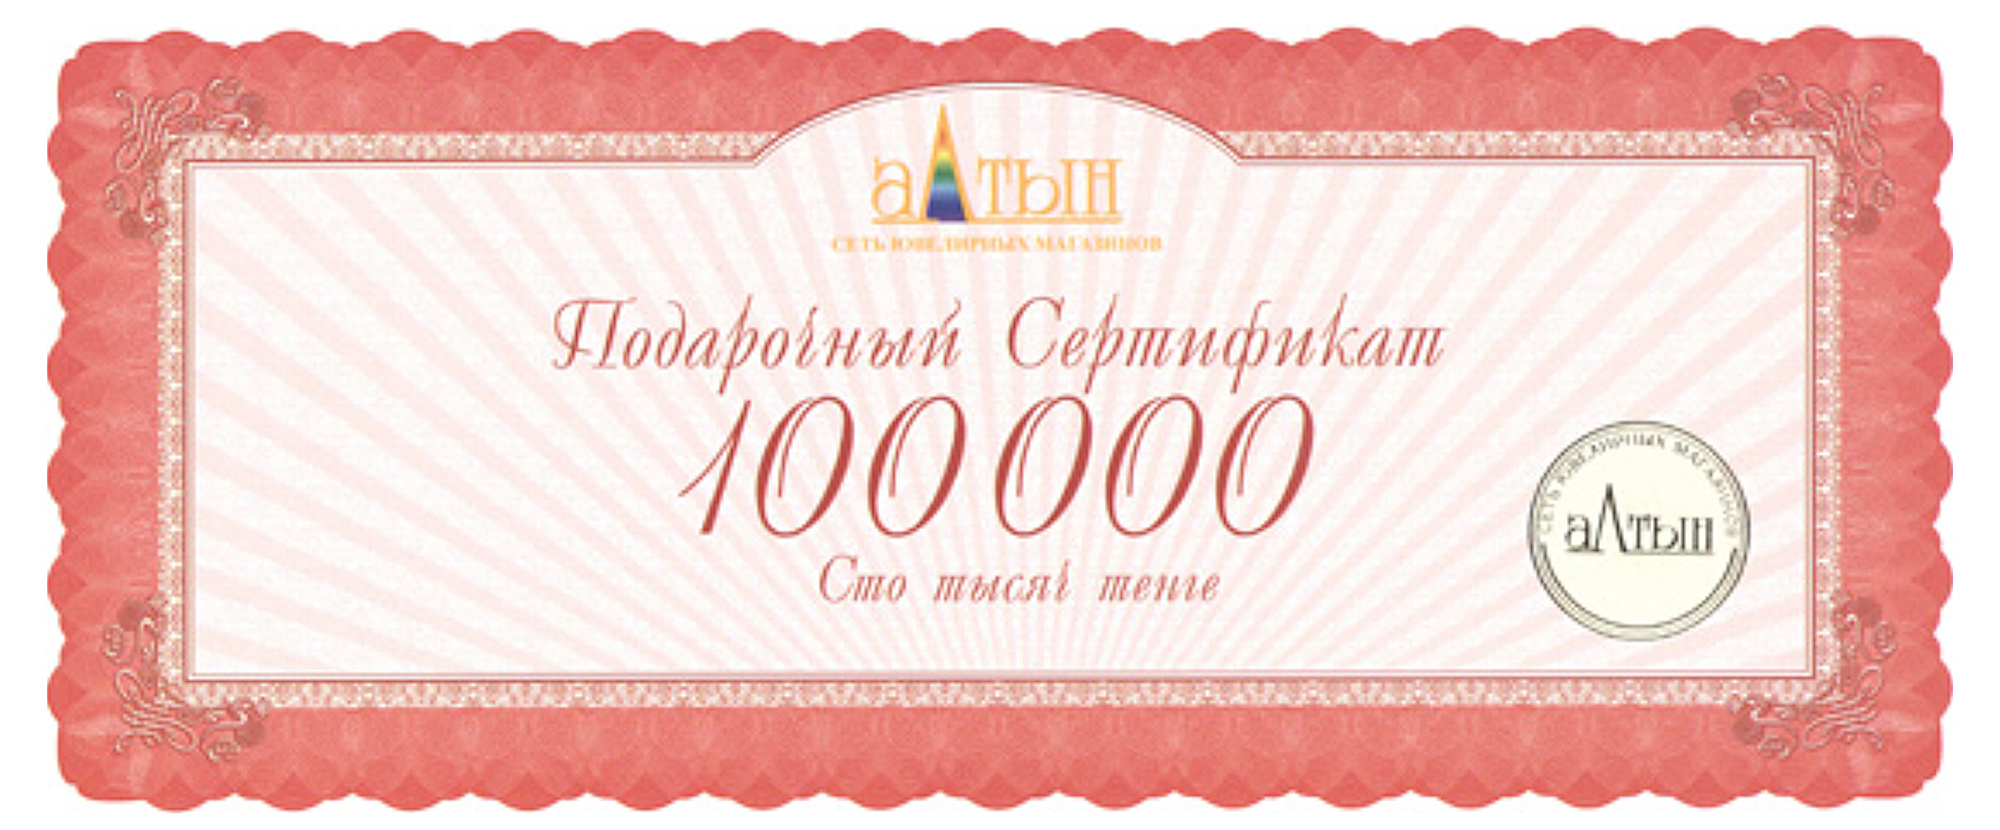 Подарочный сертификат на 100000 KZT